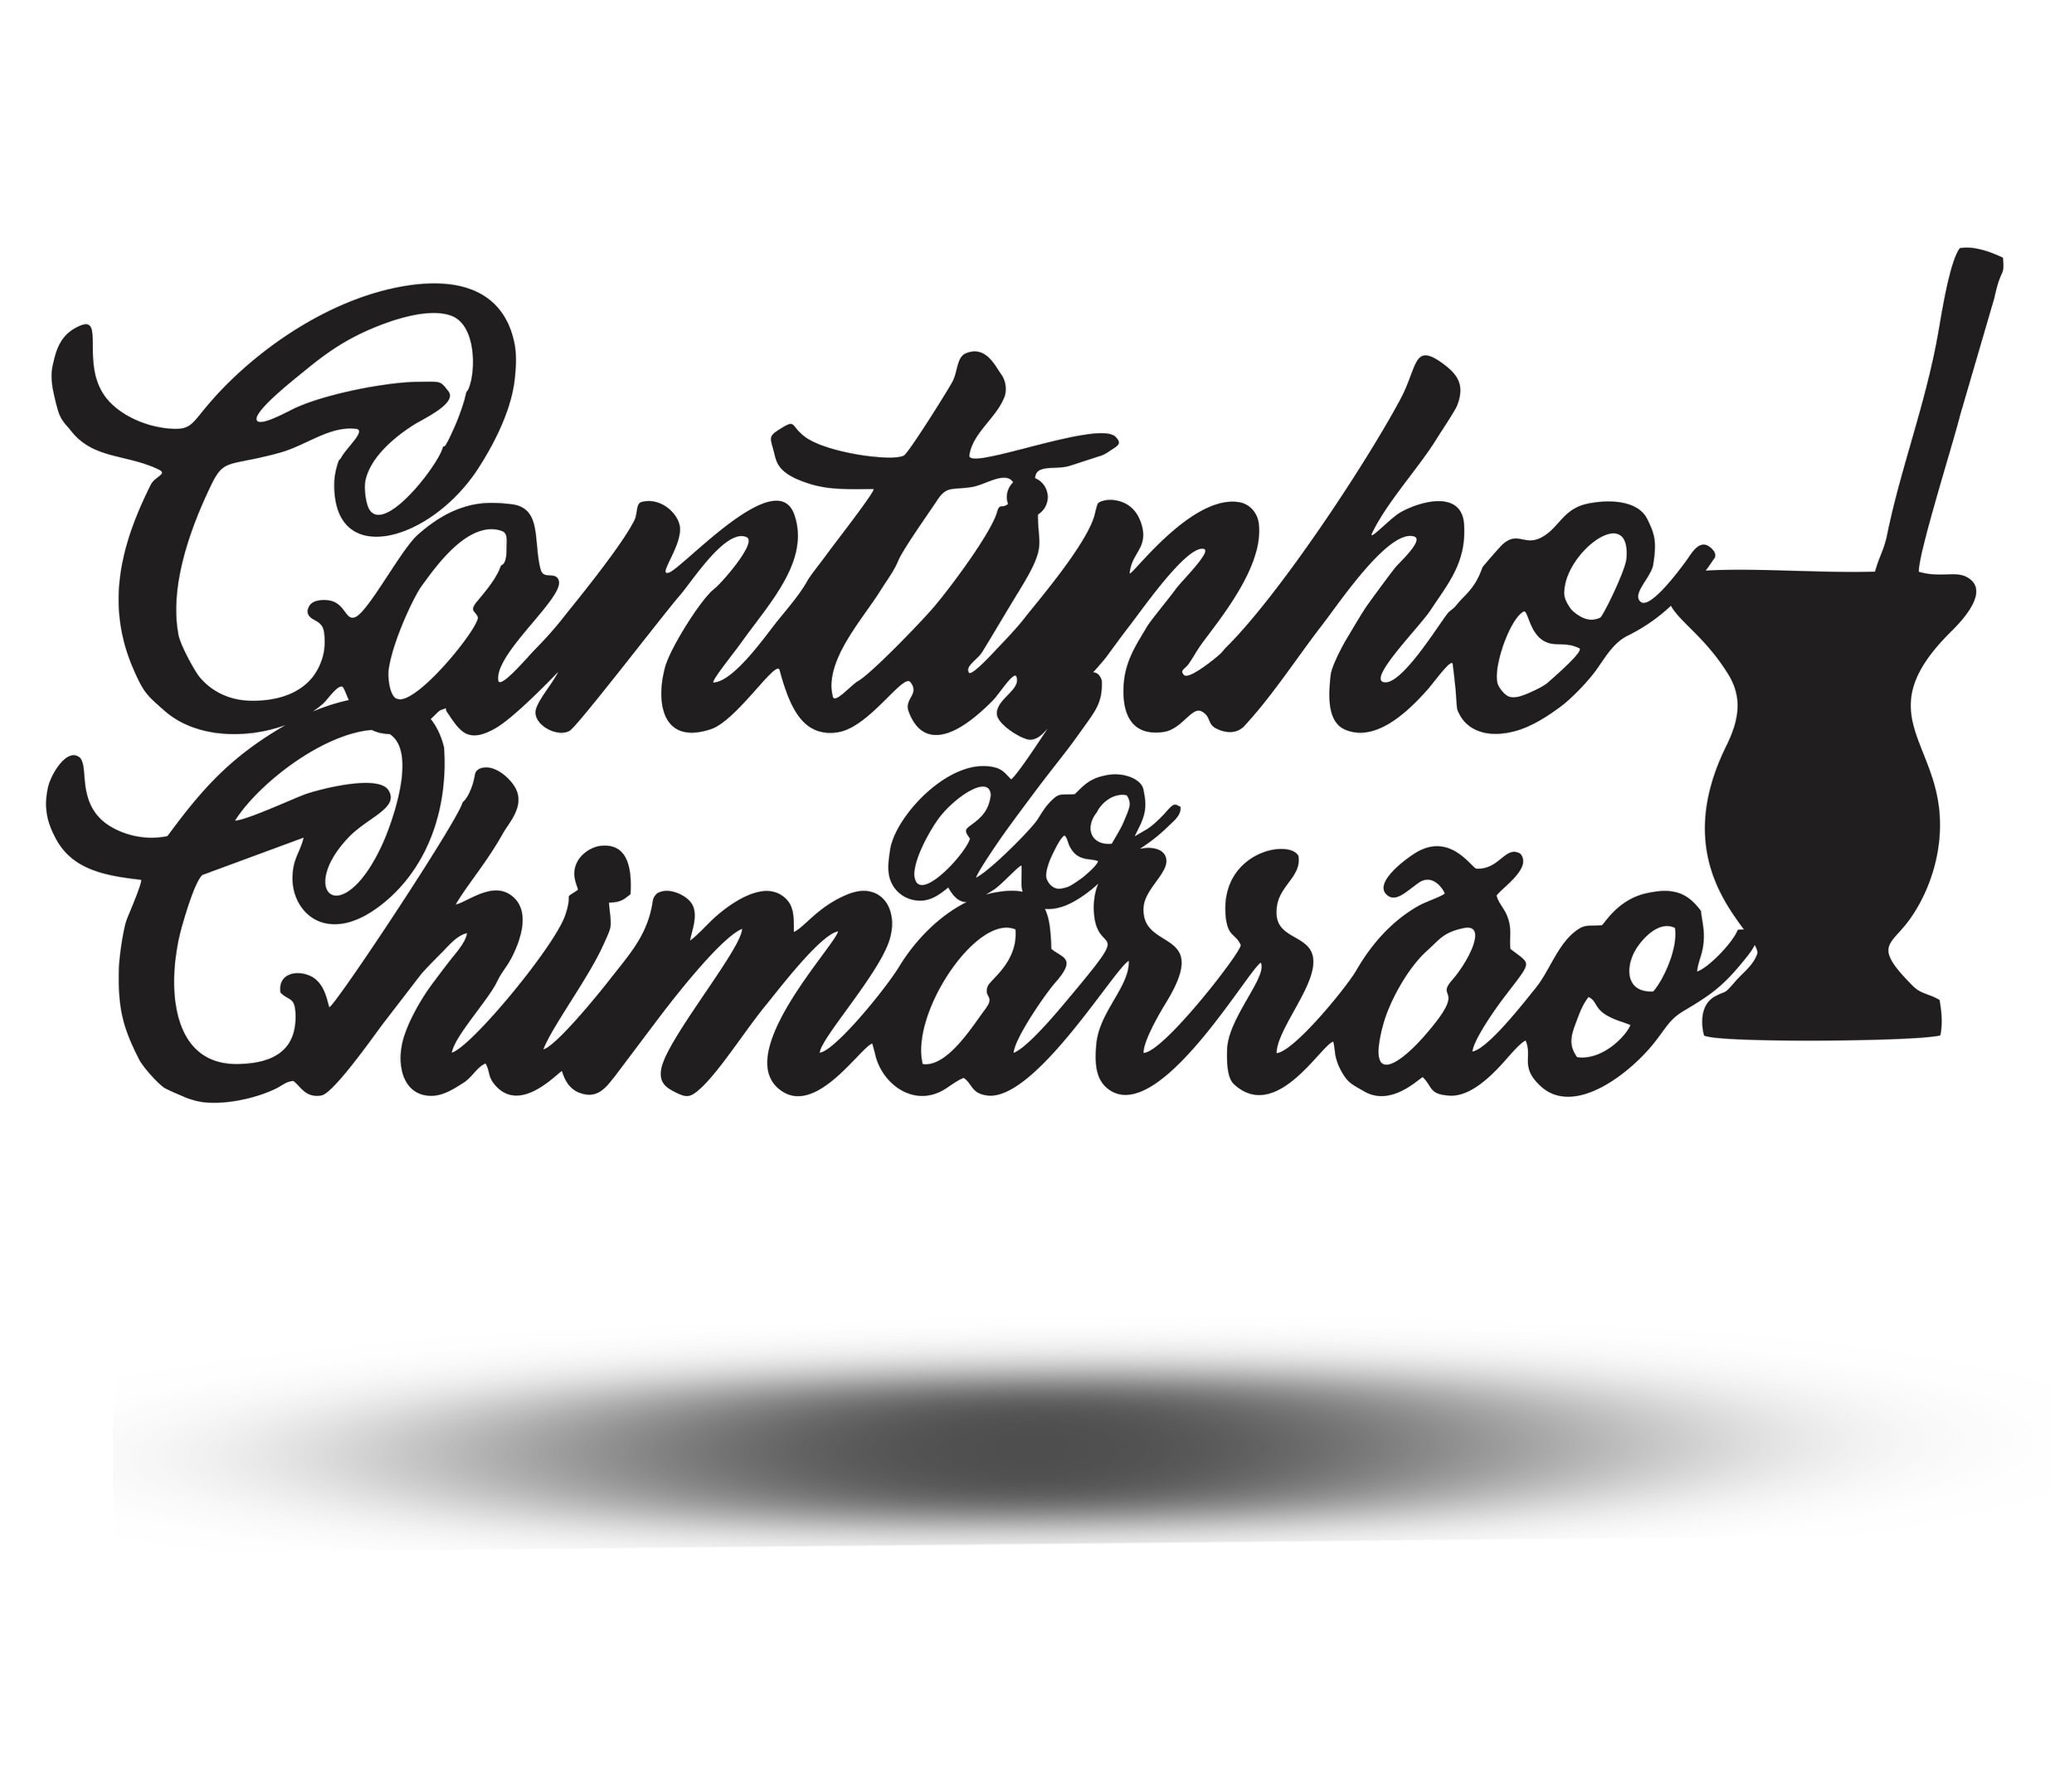 Painel Decorativo Cantinho Do Chimarrão Gaúcho Mdf Preto - 1